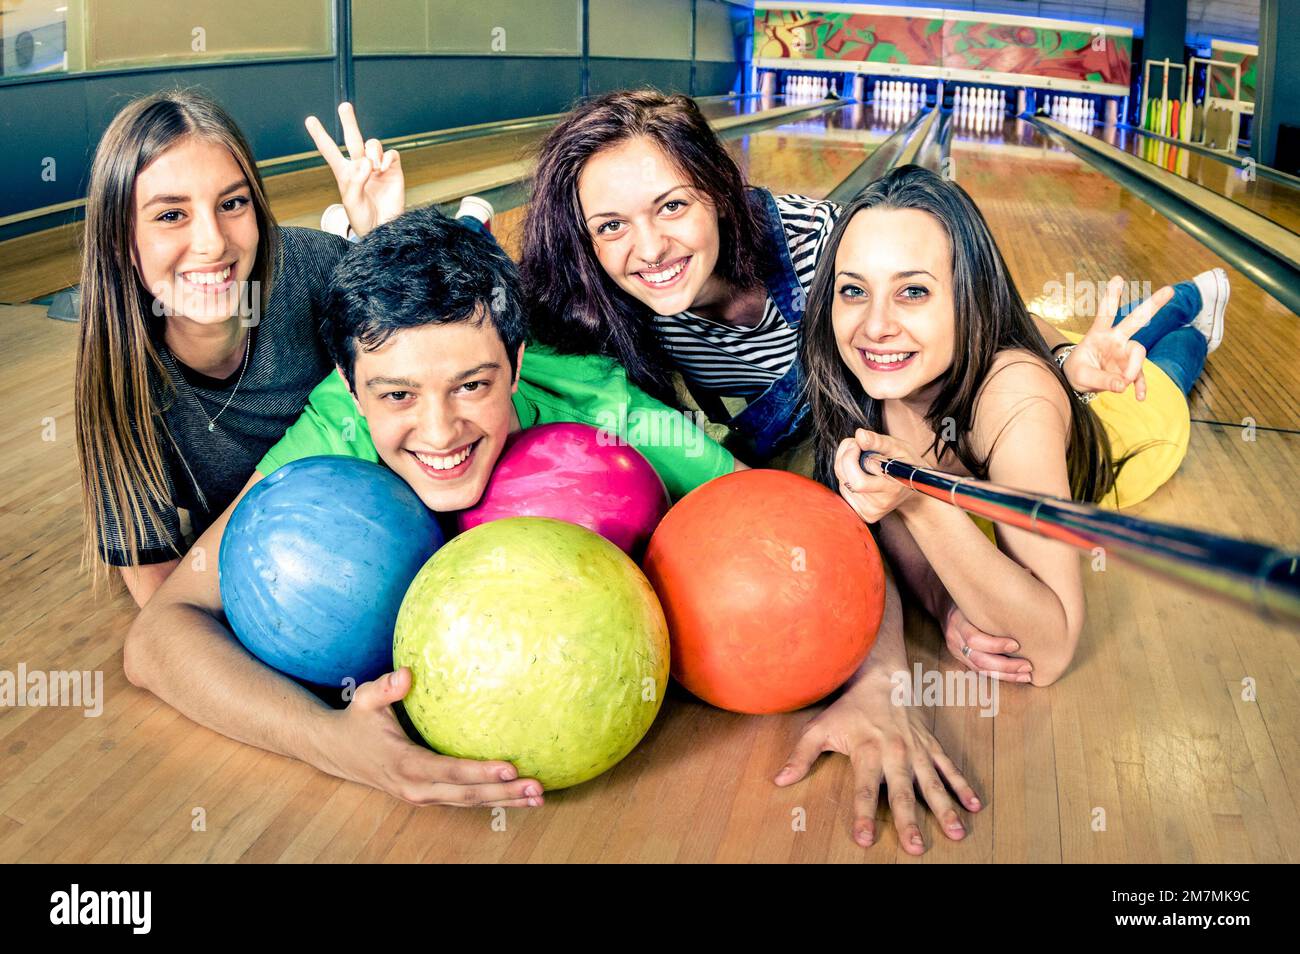 I migliori amici che usano selfie stick fare foto sulla pista da bowling - Friendship Concept con giovani giocosi che si divertono insieme - Soft focus sul ragazzo Foto Stock